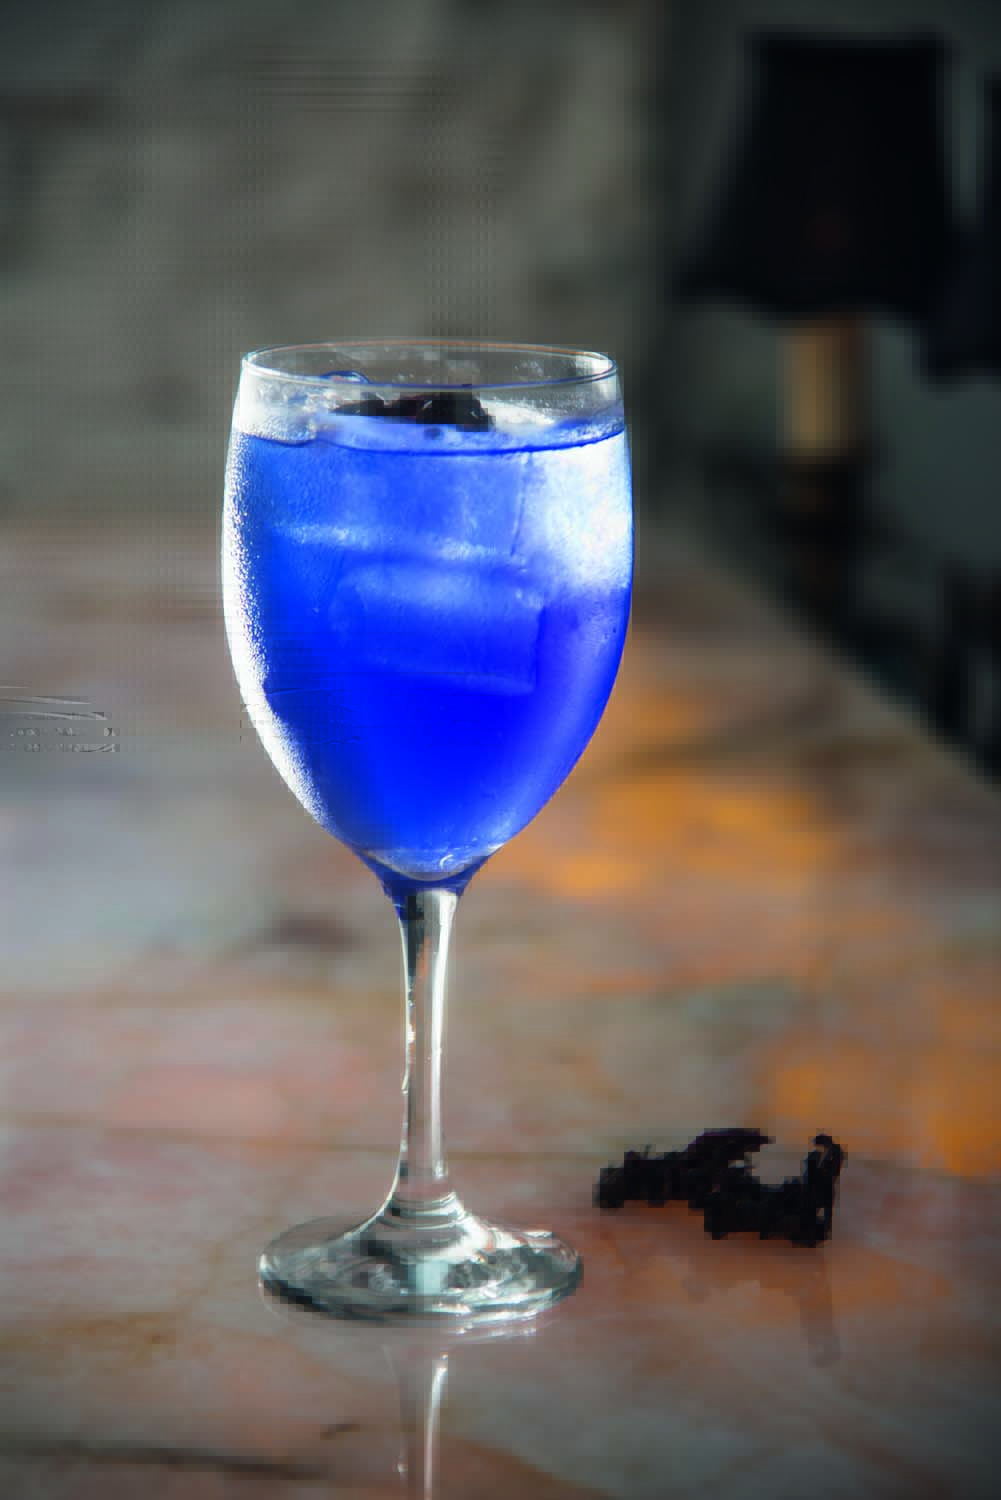 Drinque de cor azulada servido em taça alta